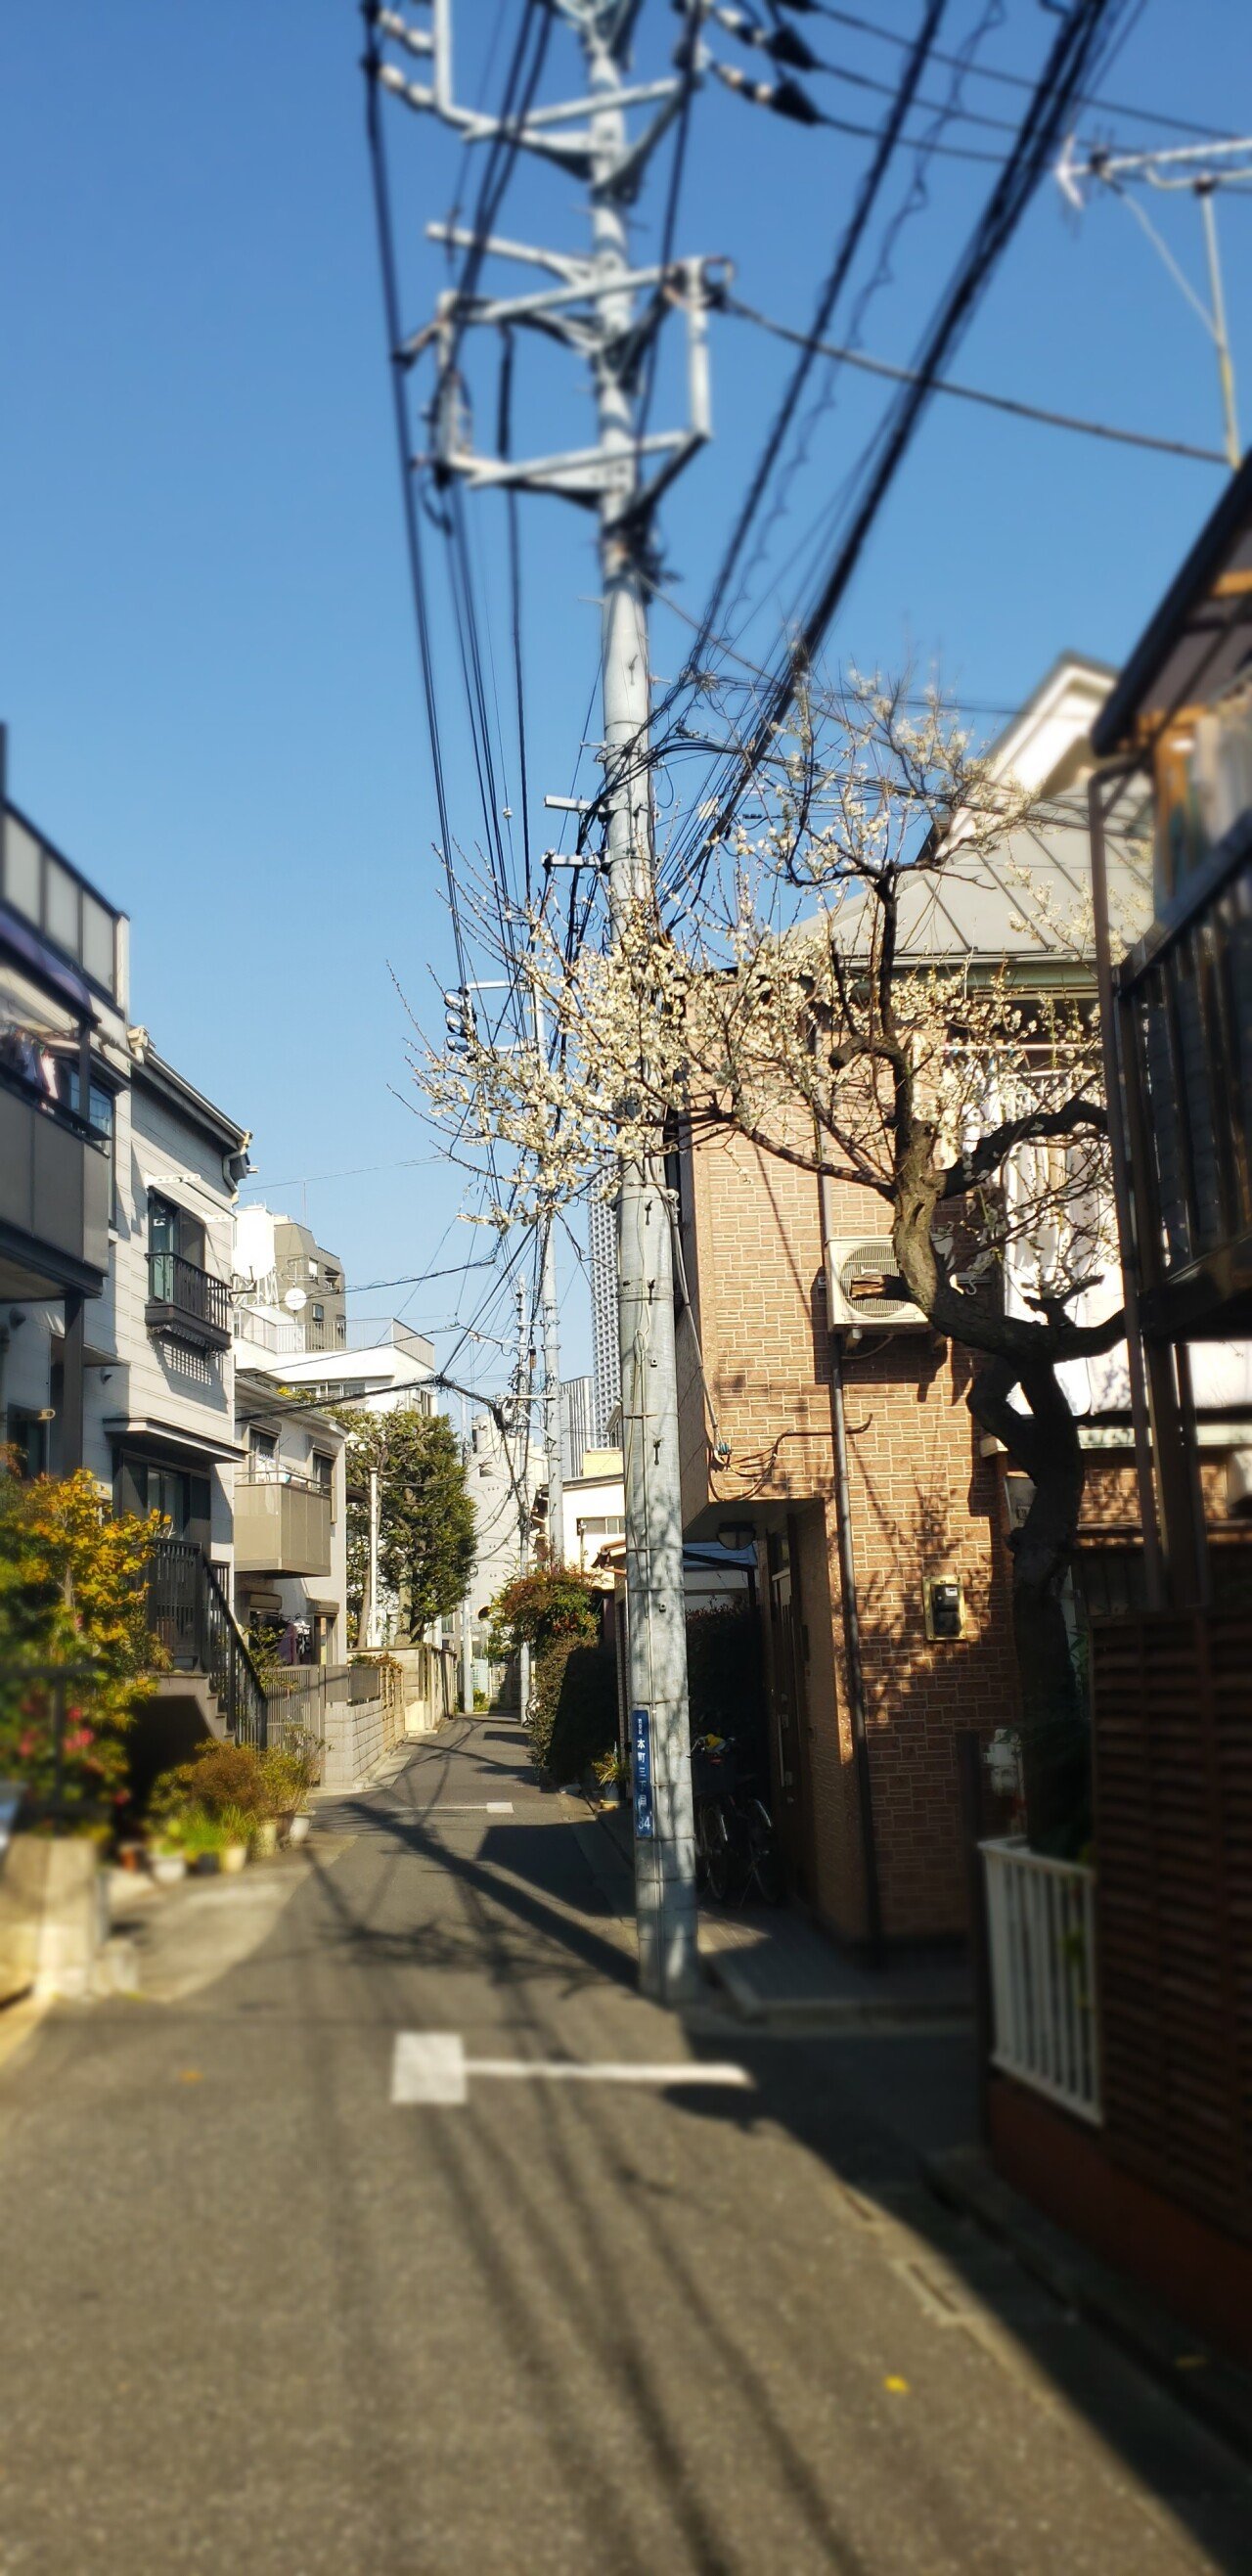 20210221_134916.jpg <도쿄 외노자> 봄날 기운 물씬 느껴지는 도쿄 길거리 풍경.jpg